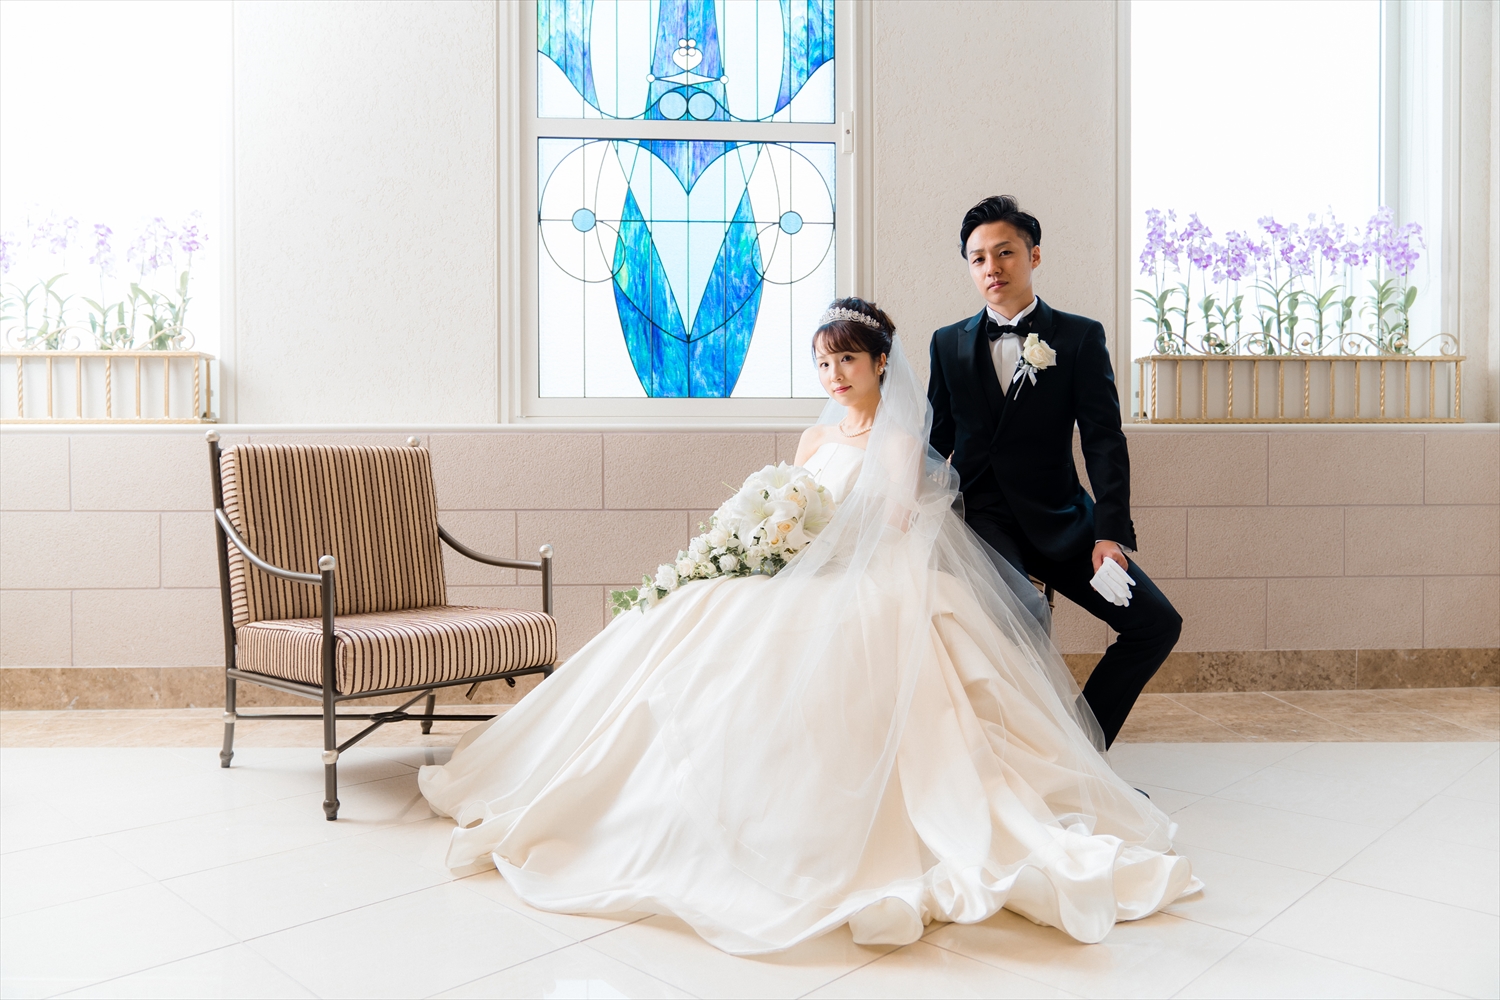 マリオットアソシアホテルでの結婚式写真撮影 結婚式ビデオ撮影 写真撮影なら月山映像へ 大阪 神戸 京都